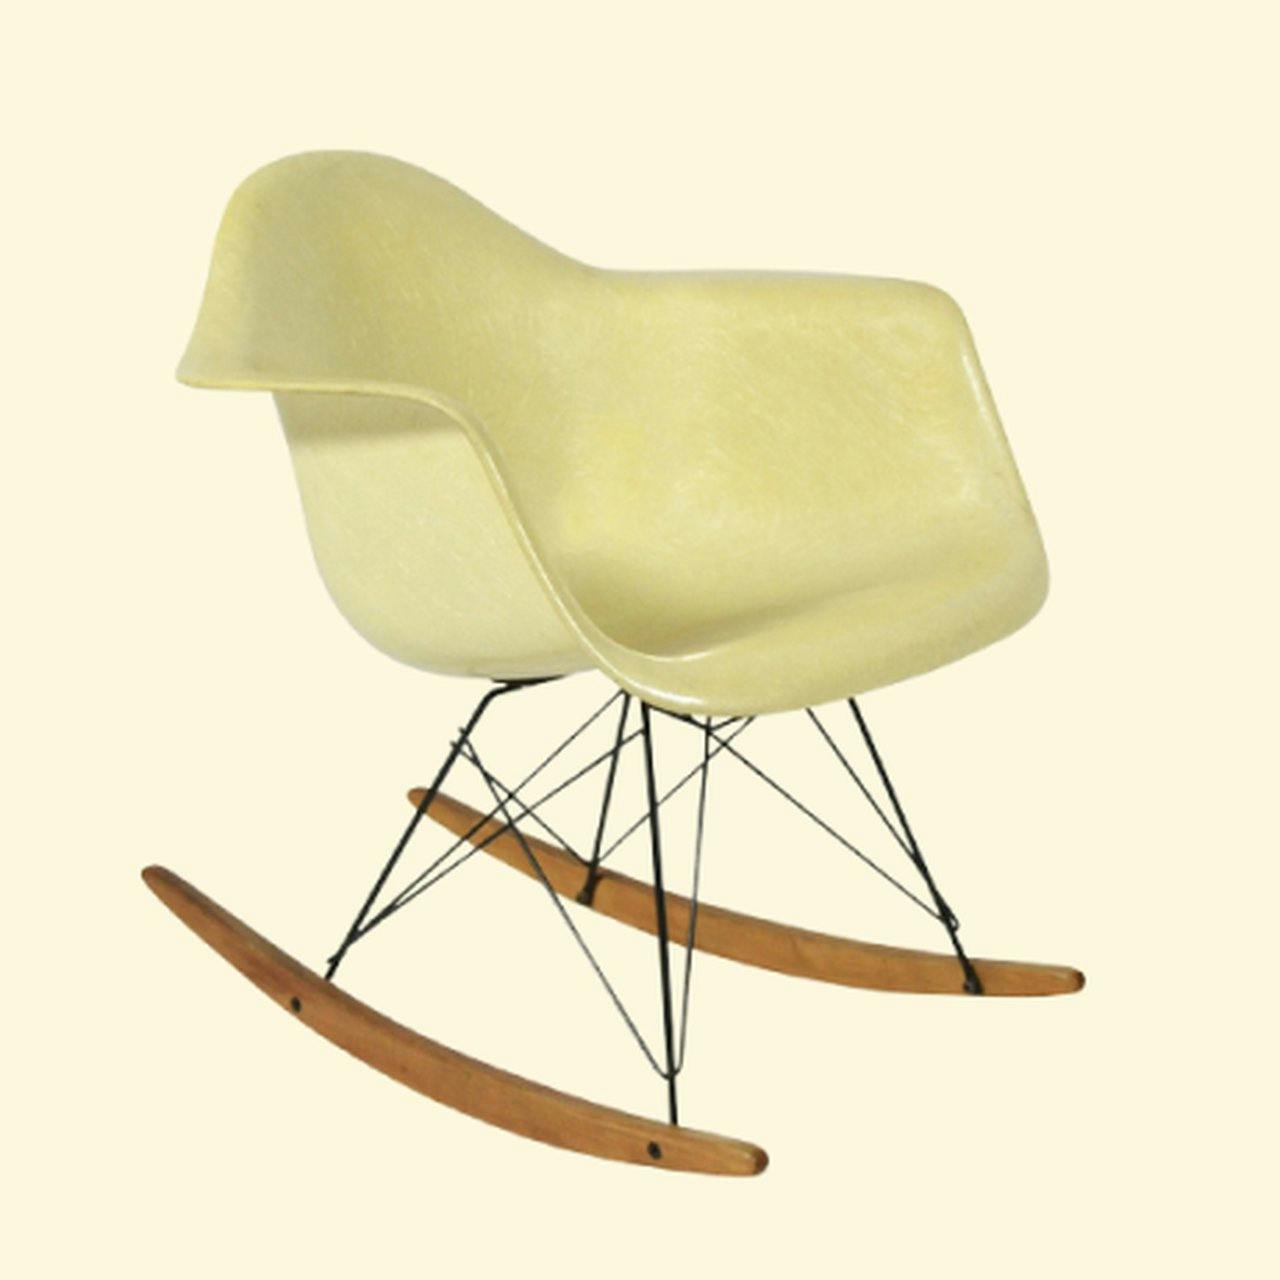 Dutch Design Rocking chairs